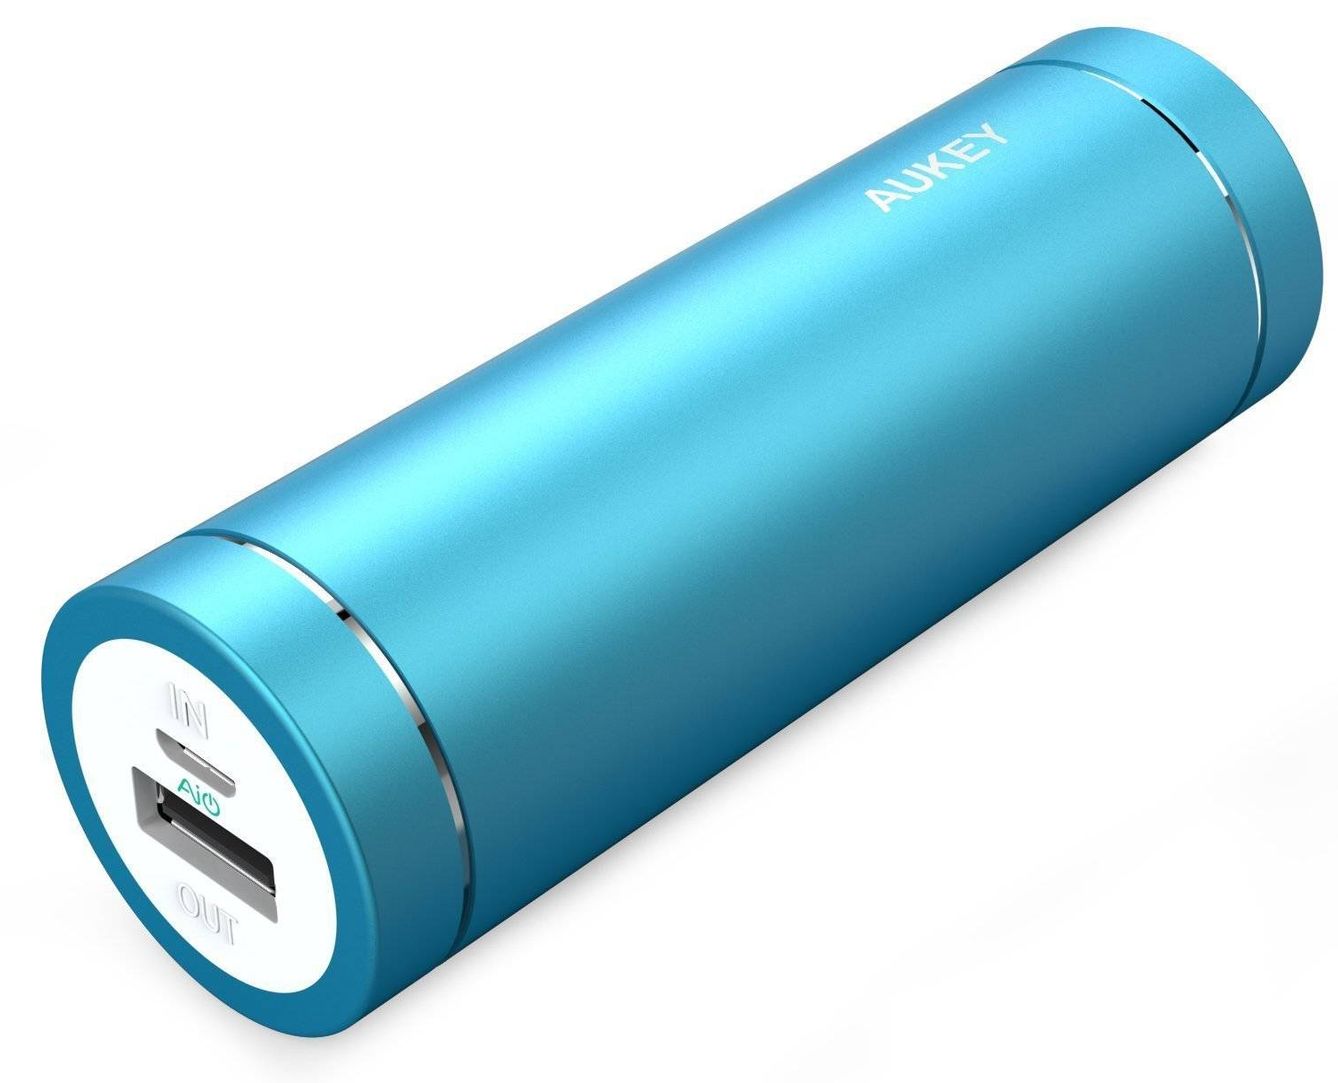 Las baterías externas son bellas y útiles a la vez (Amazon)